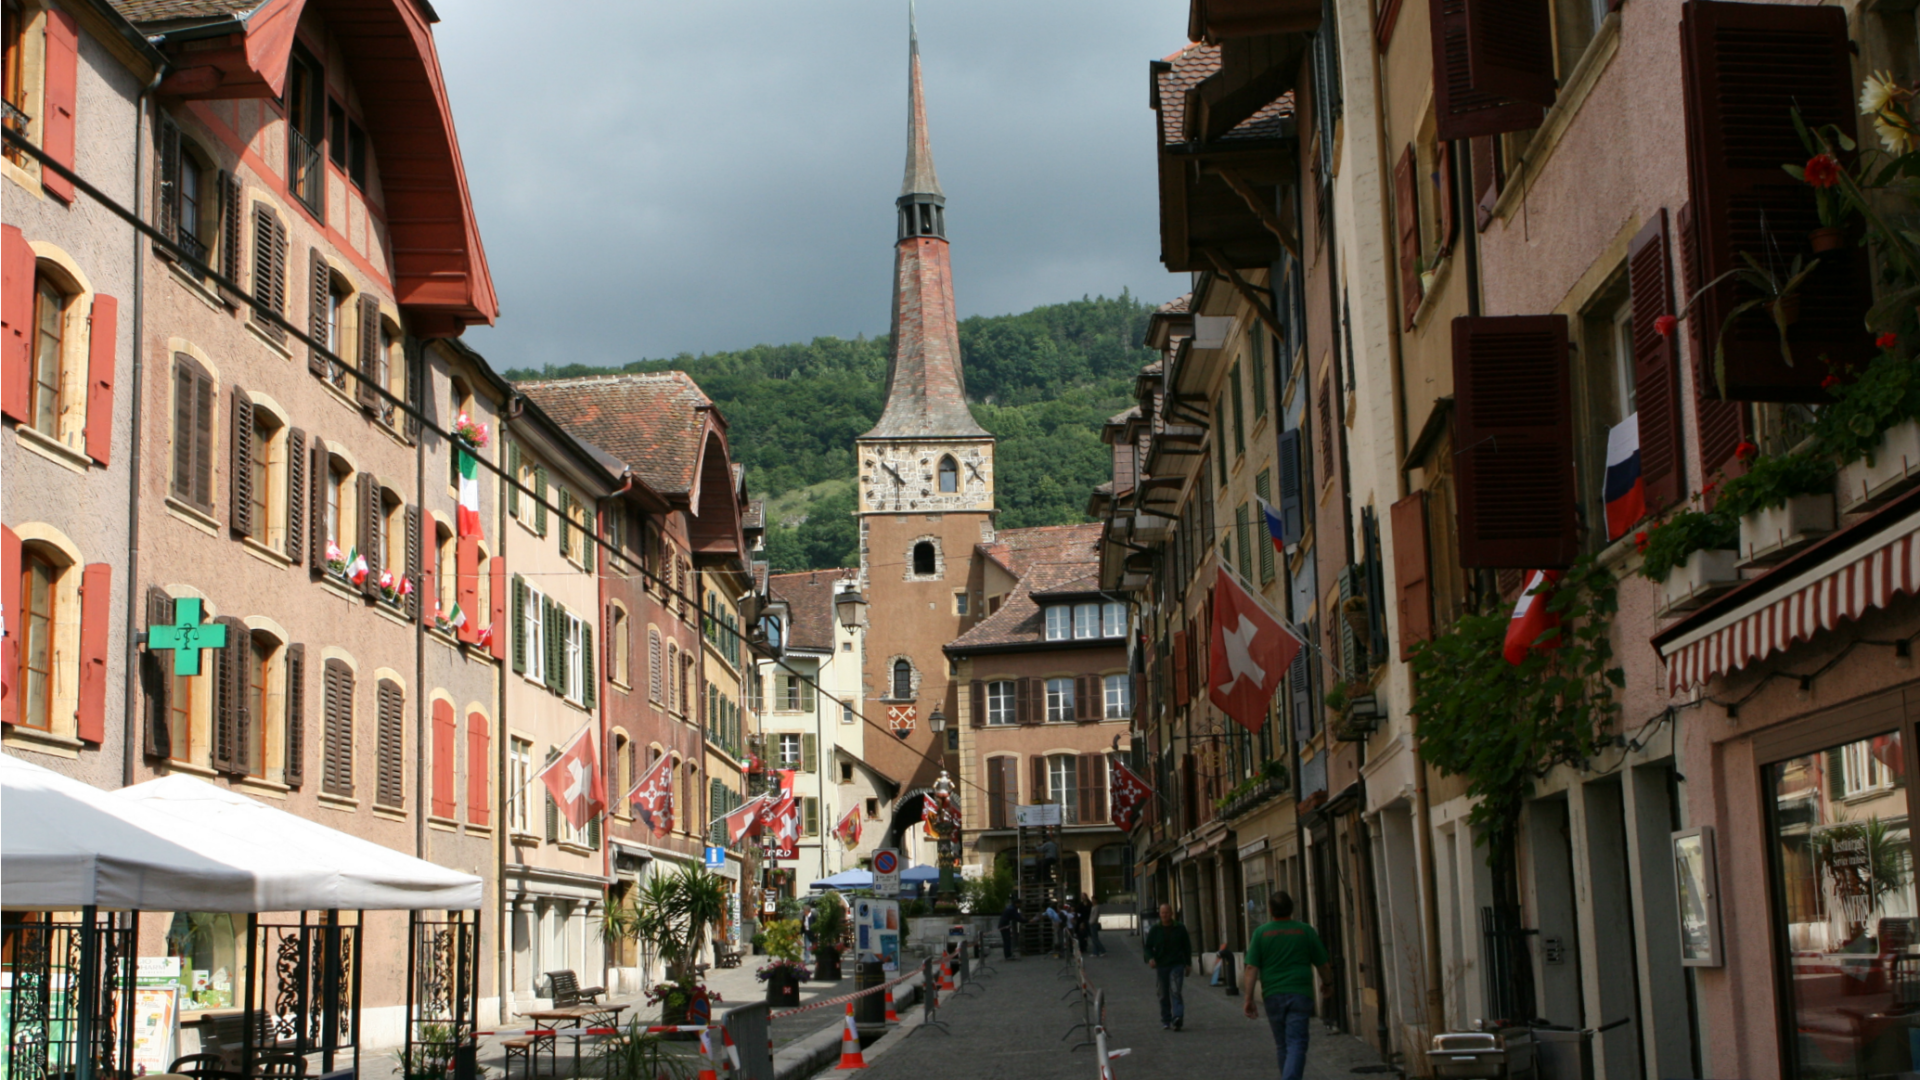 Les communautés chrétiennes ont animé la Neuveville, dans le canton de Berne, pour la Semaine sainte (Photo:Jan/Flickr/CC BY-NC-ND 2.0)